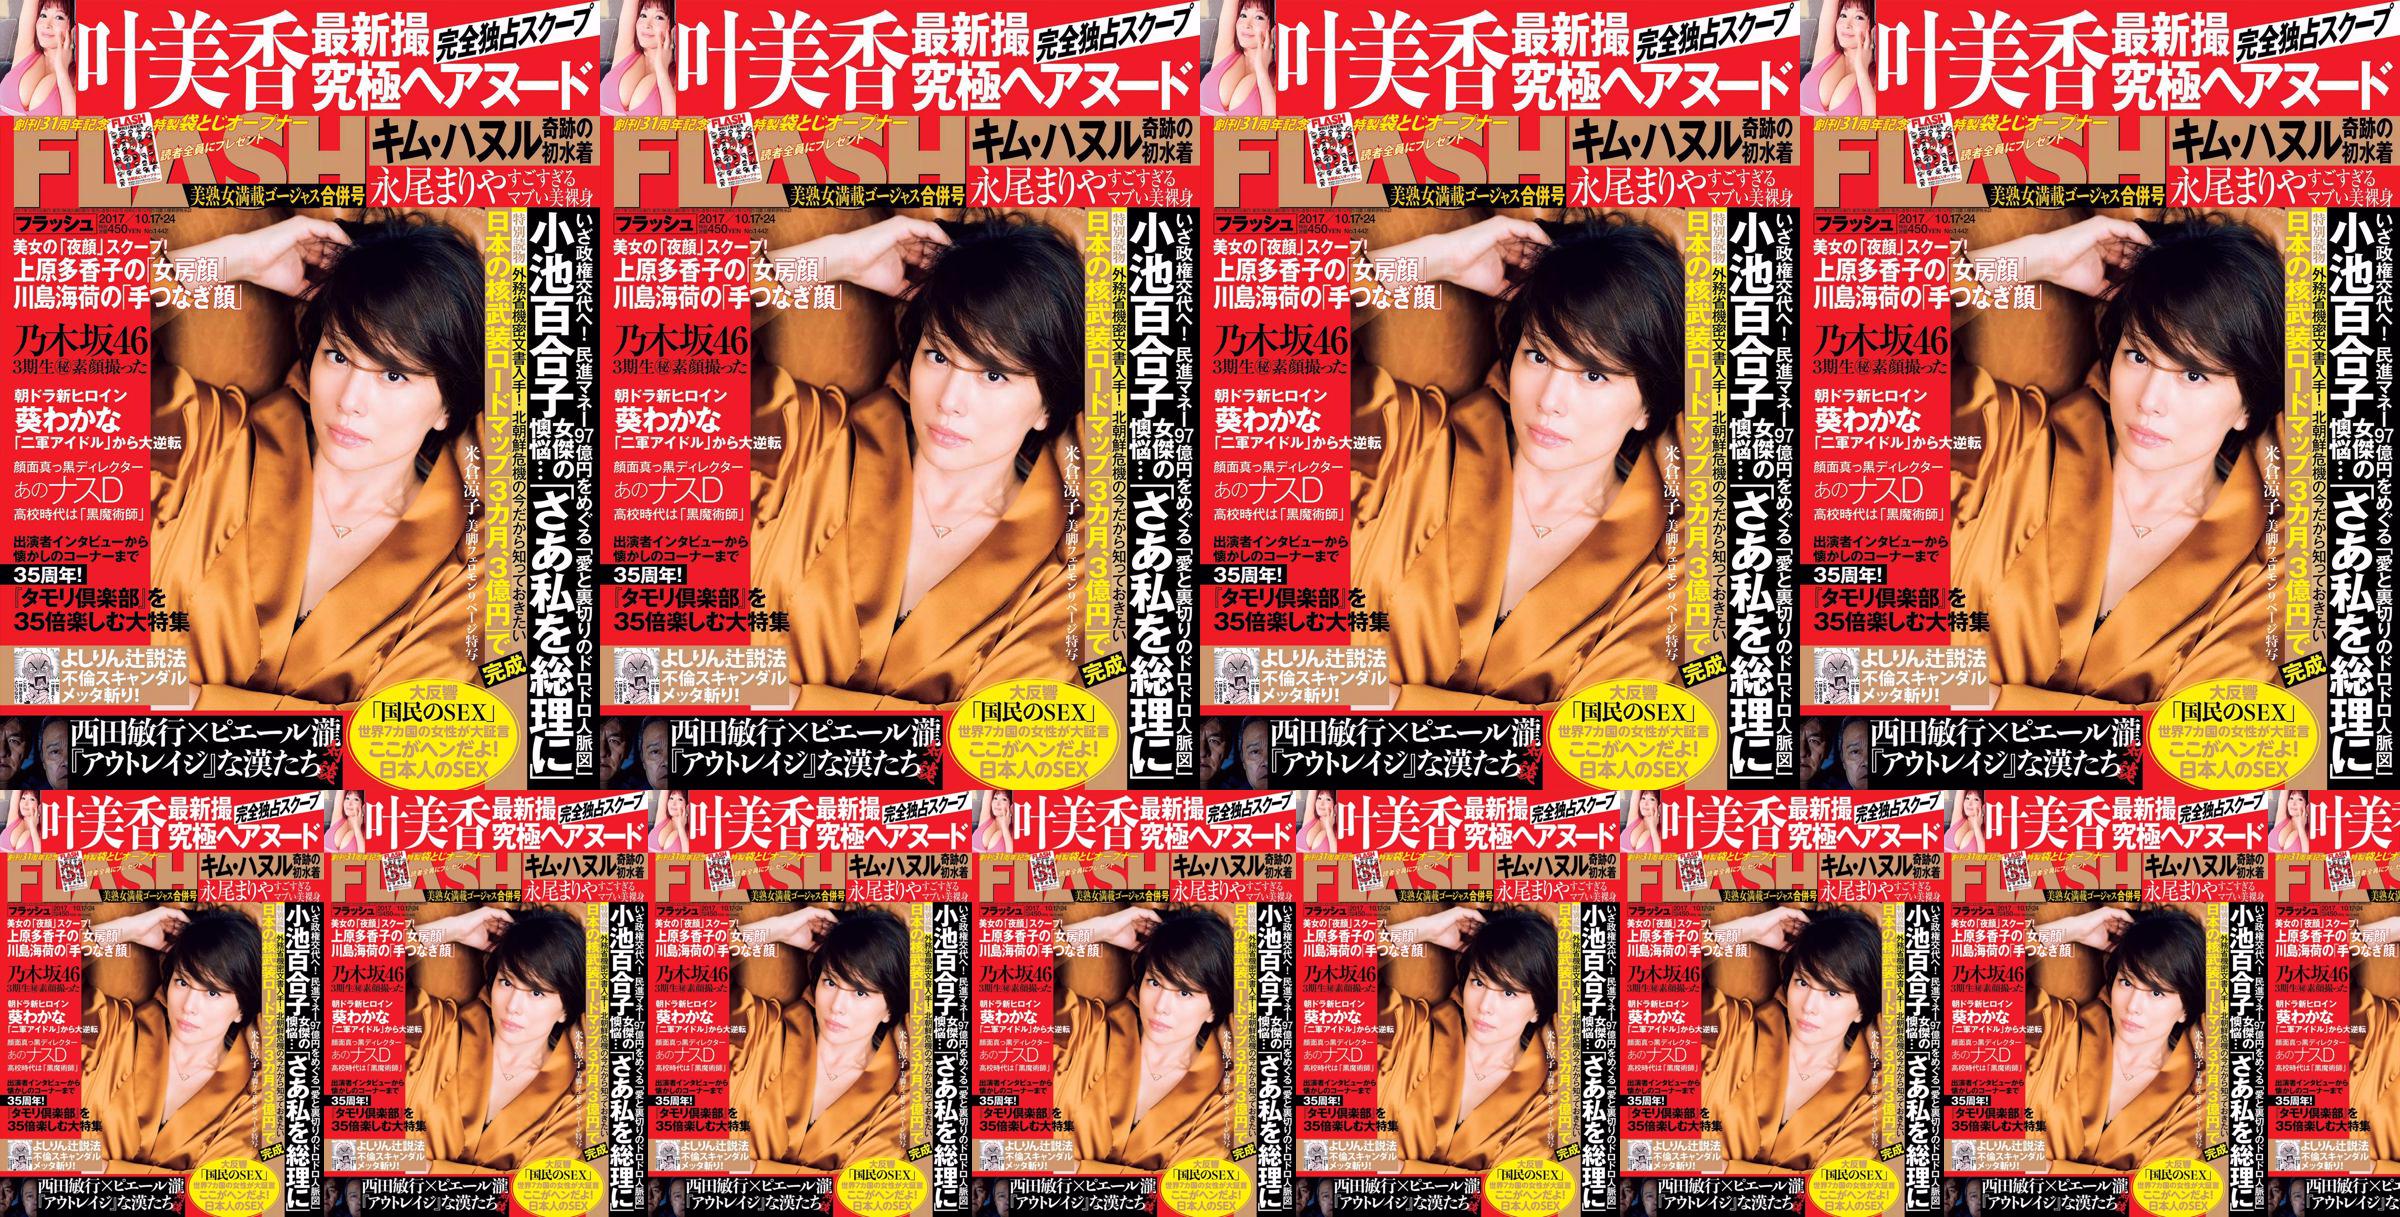 [FLASH] Yonekura Ryoko Ye Meixiang Tachibana Blumen Rin Nagao Rika 2017.10.17-24 Fotomagazin No.0f17c9 Seite 1